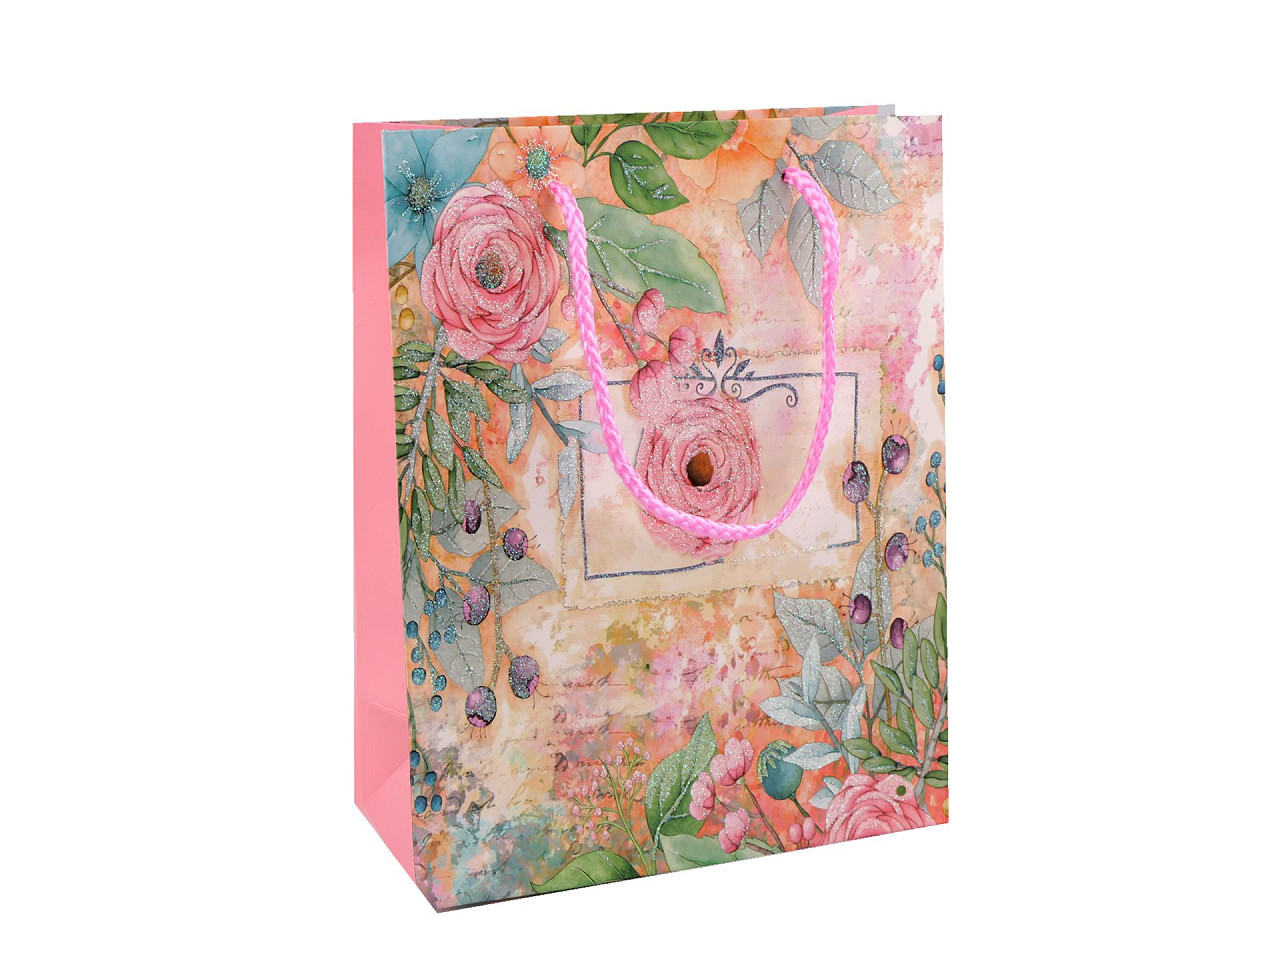 Dárková taška s glitry květy, barva 1 růžová sv.